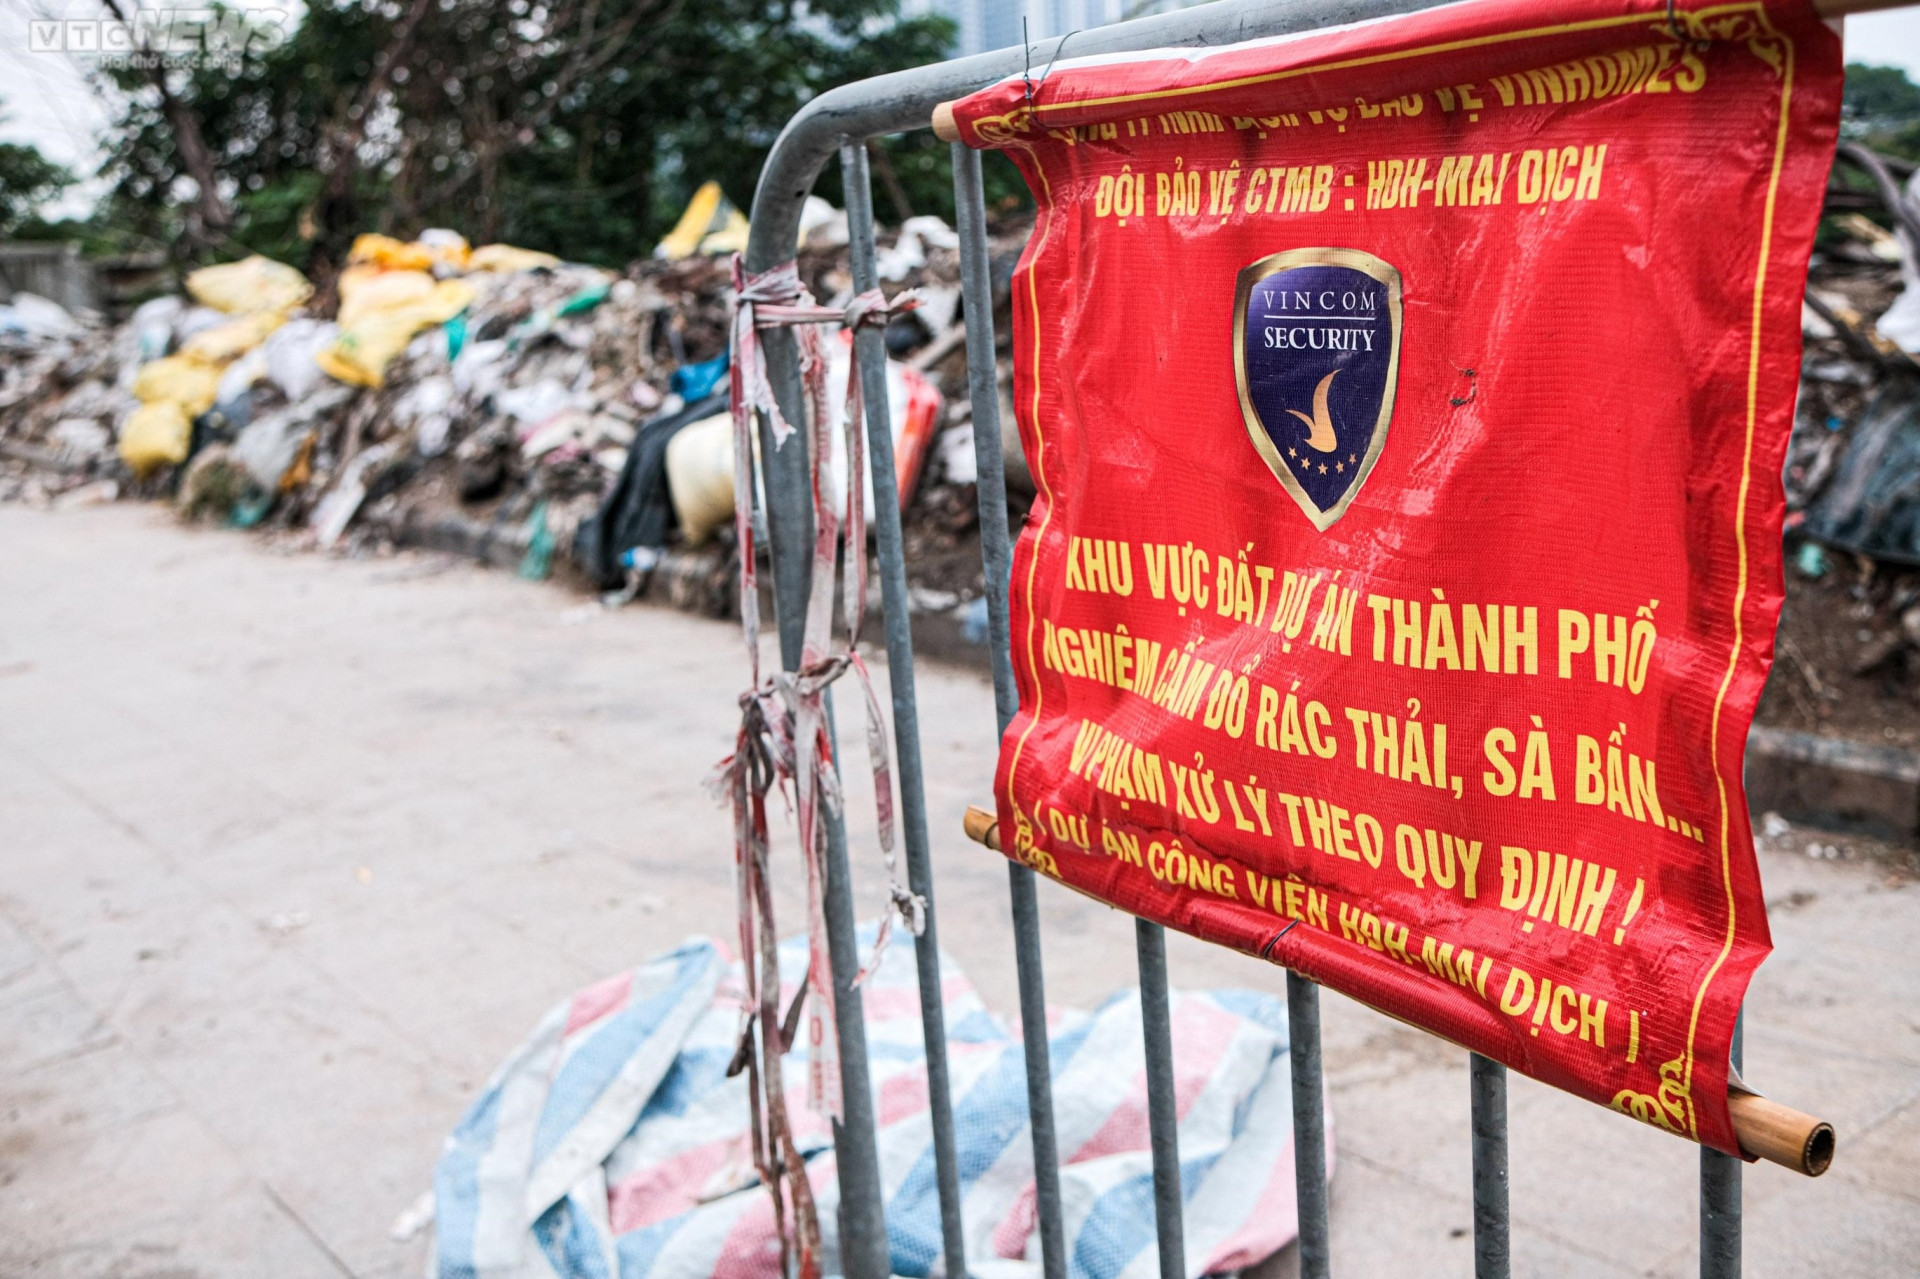 Hà Nội: Vỉa hè công viên Mai Dịch ngập rác thải, bị chiếm dụng làm bãi đỗ xe - 6